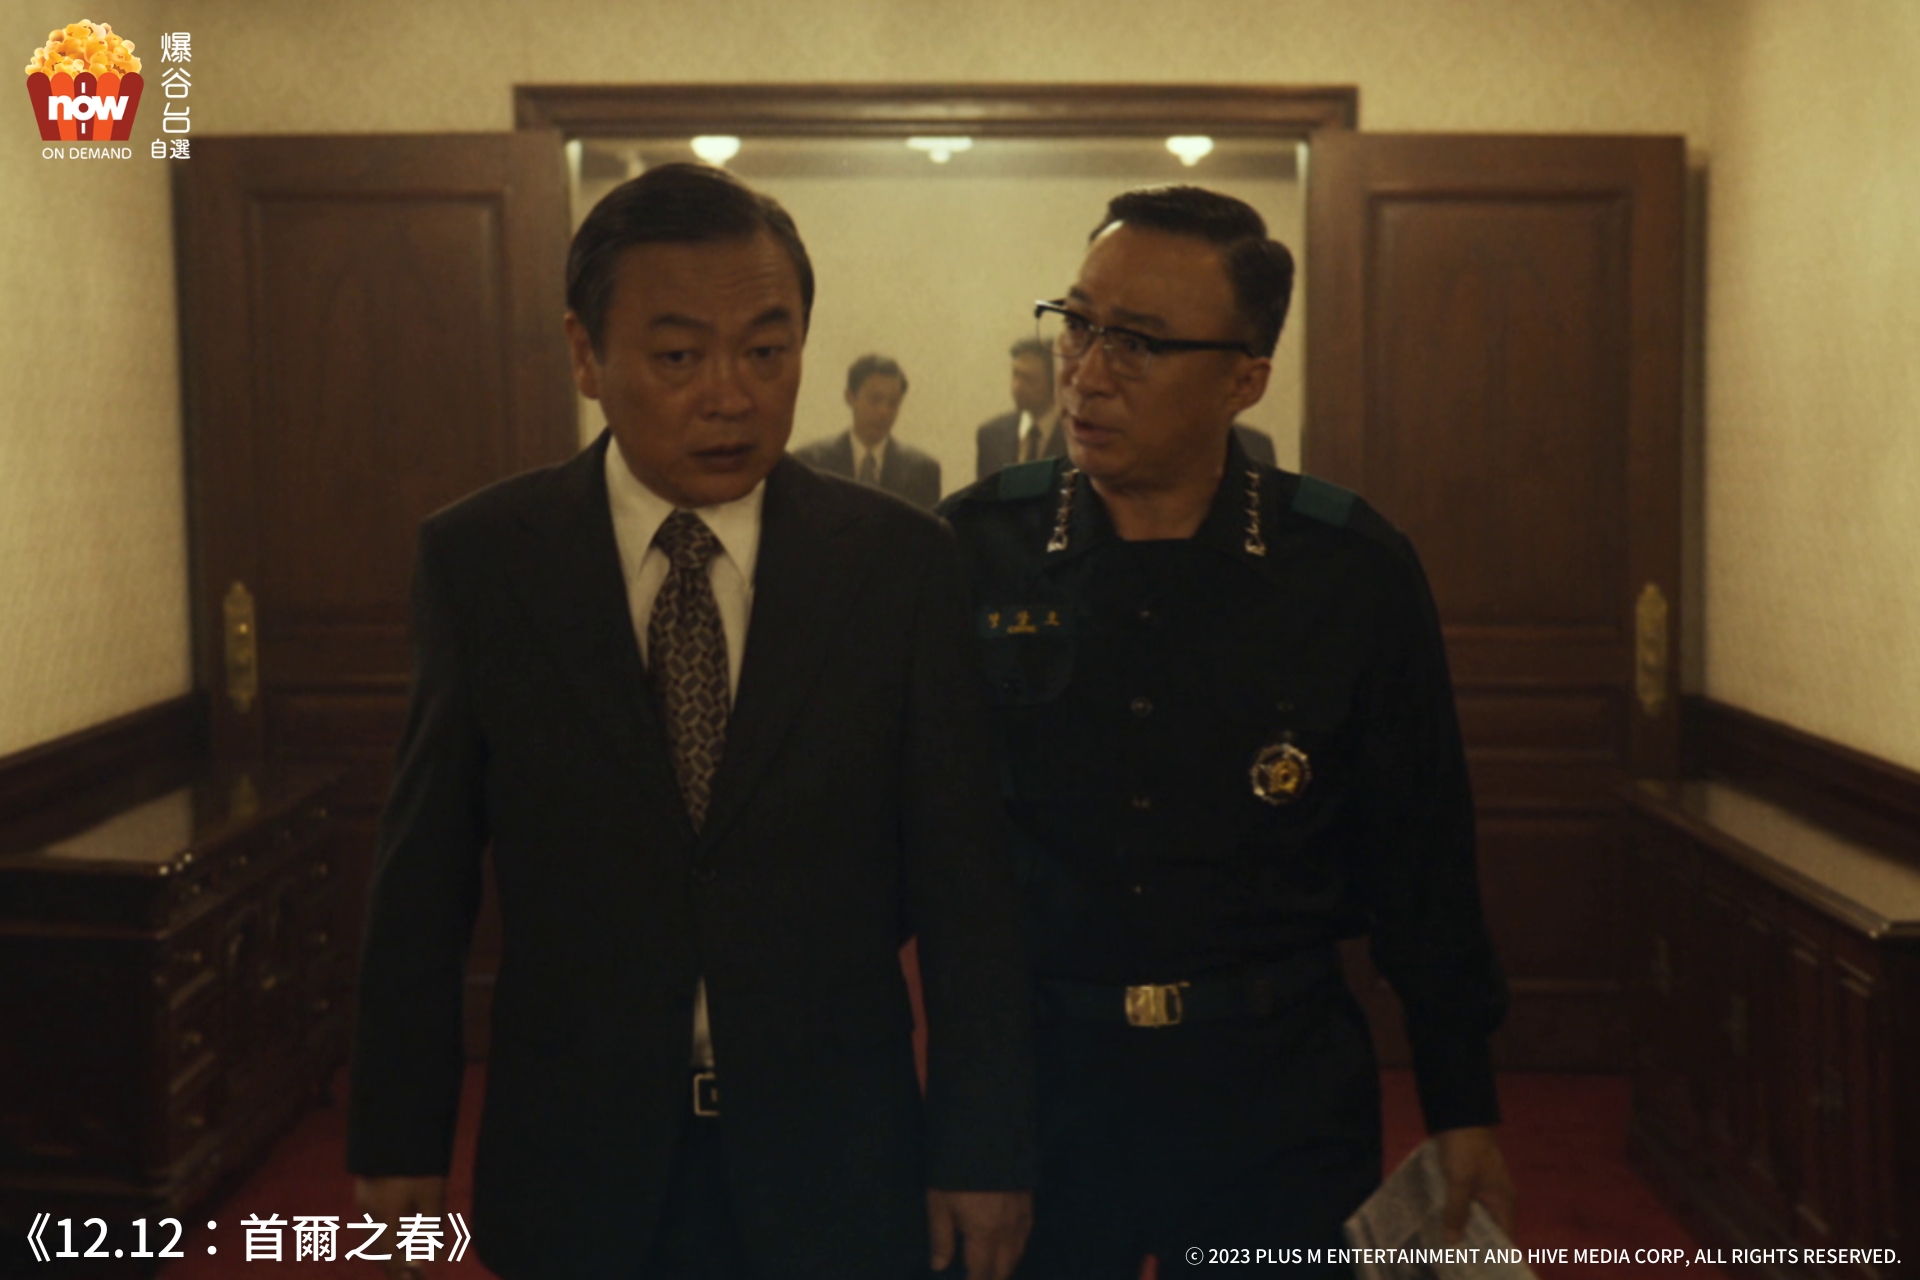 (左) 《屍殺列車》的金義聖於電影中飾演國防部長；(右) 《財閥家的兒子》的李聖旻則飾演全斗光上司。